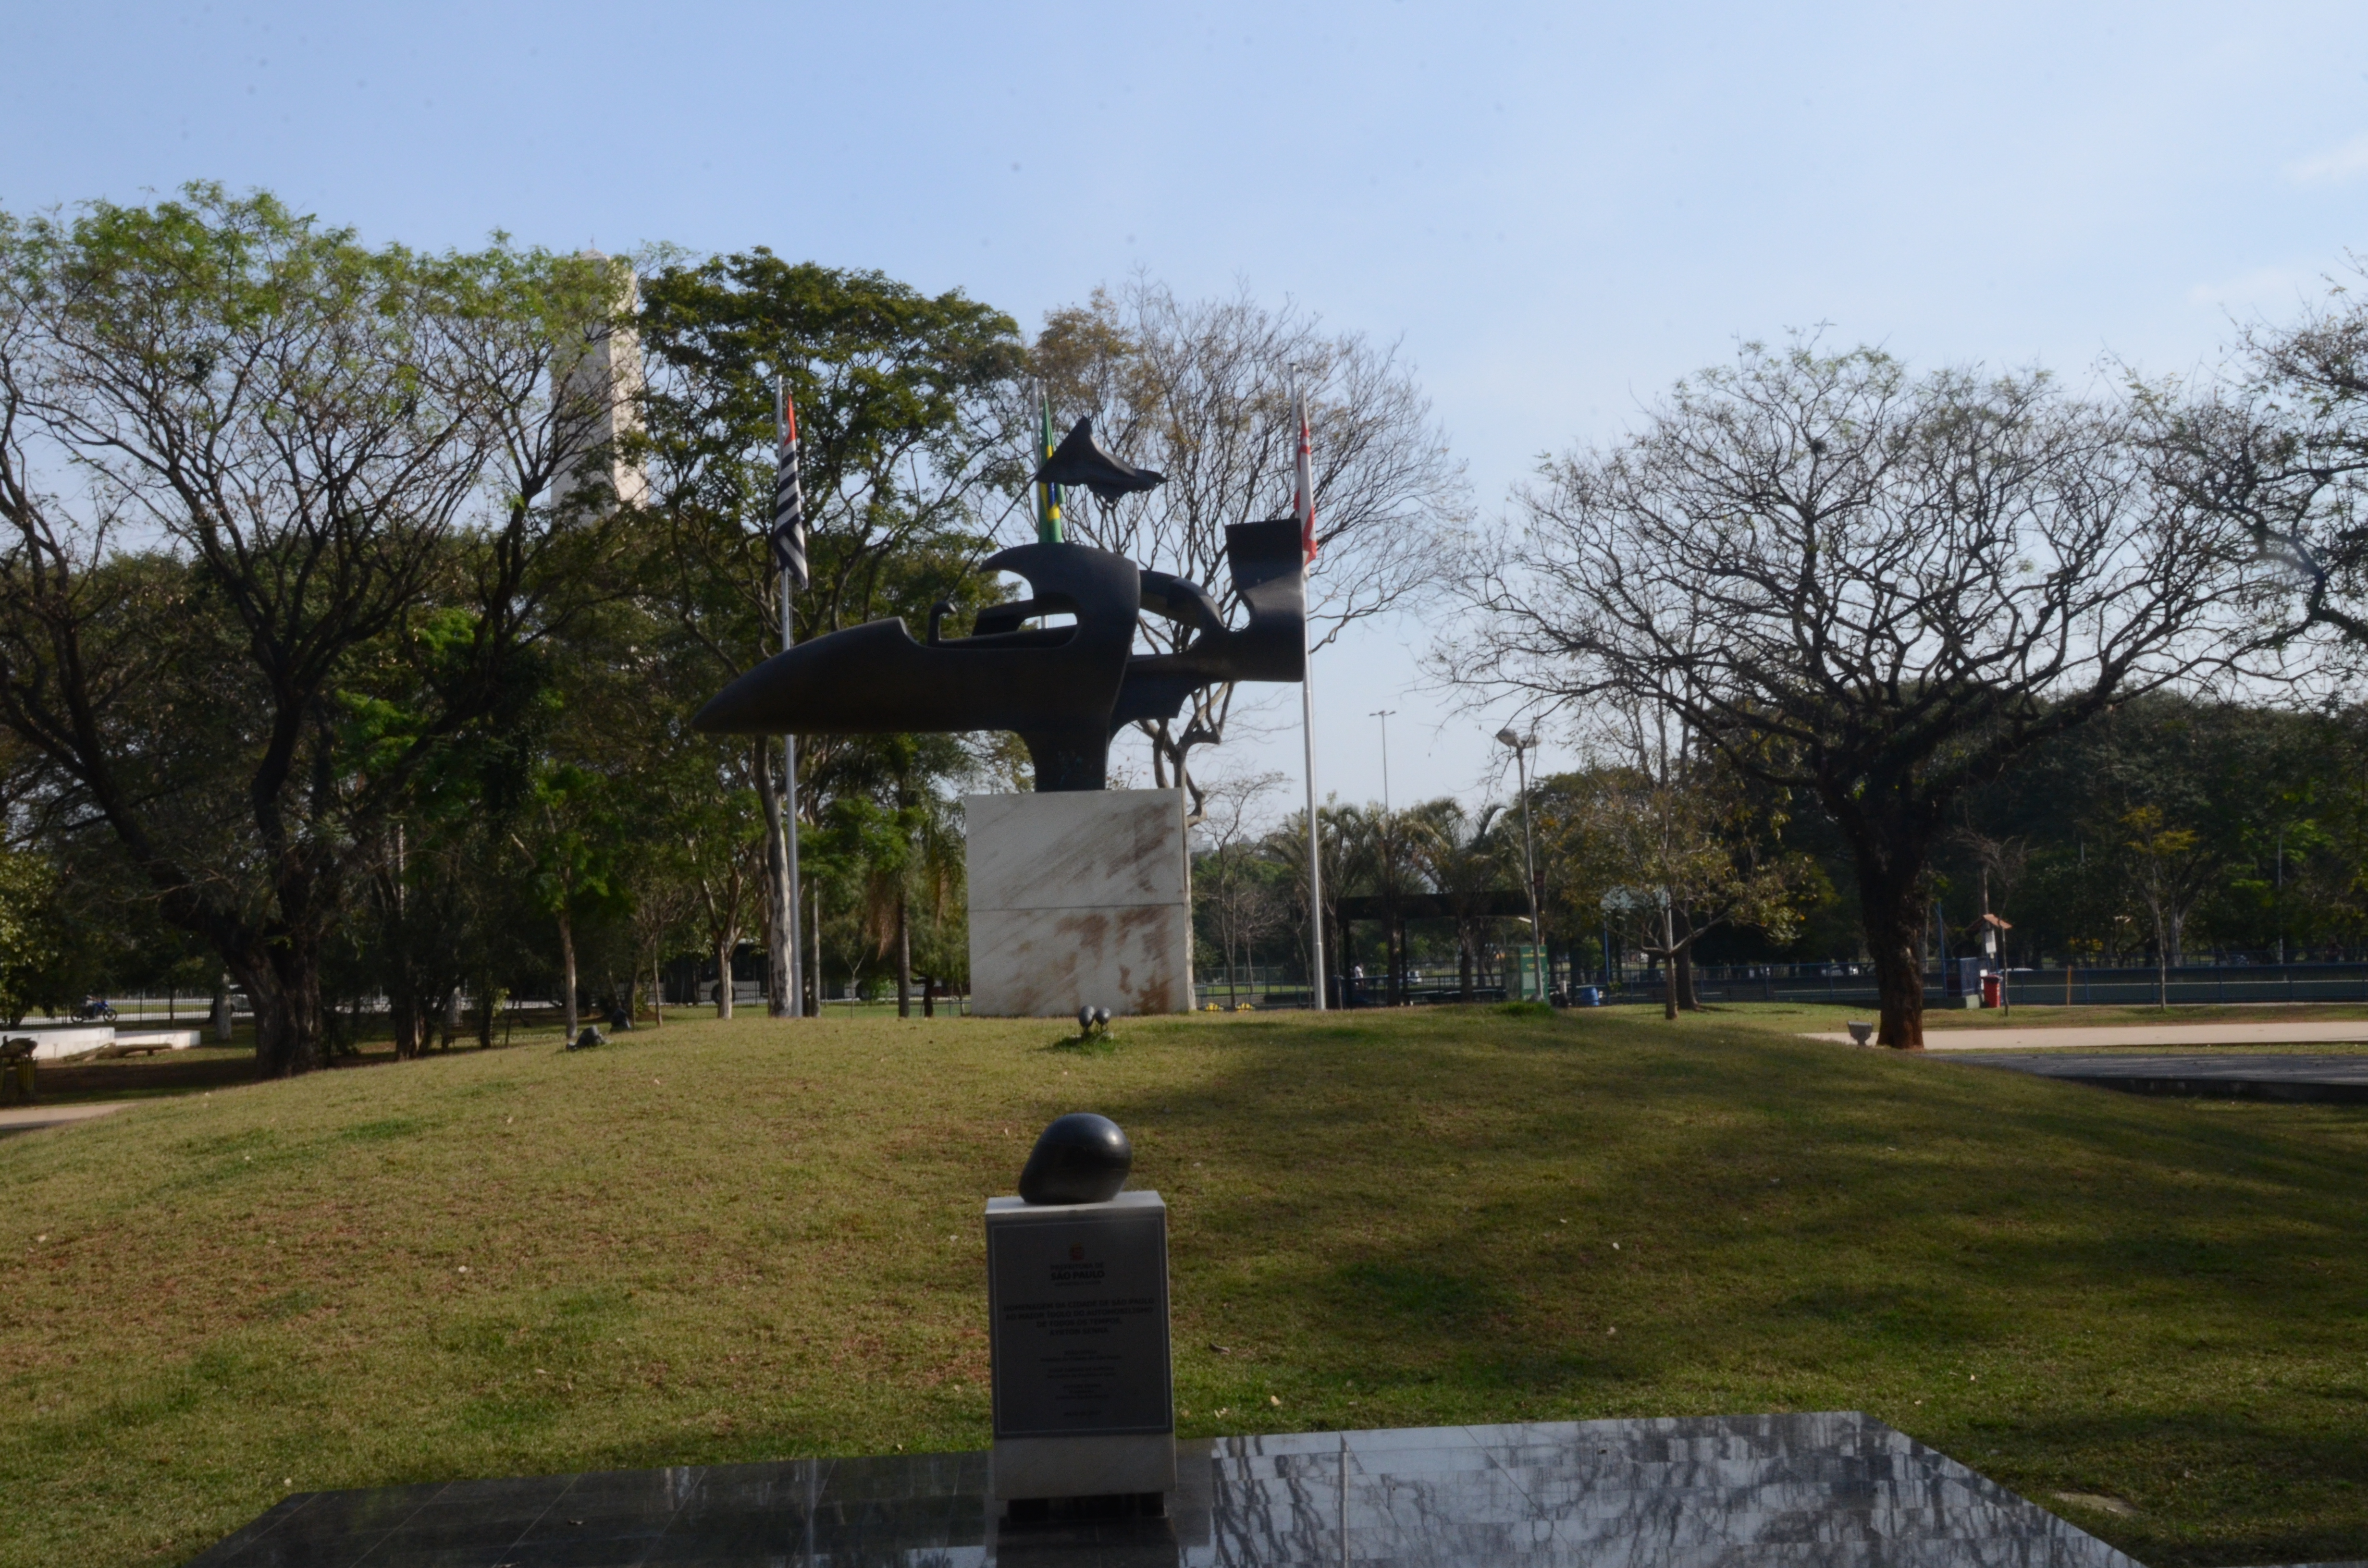 Na imagem a Praça Ayrton Senna em homenagem ao piloto e Ídolo brasileiro, ao redor do monumento existem frases ditas por Ayrton além, de árvores. Foto tirada em um dia ensolarado no Modelódromo.